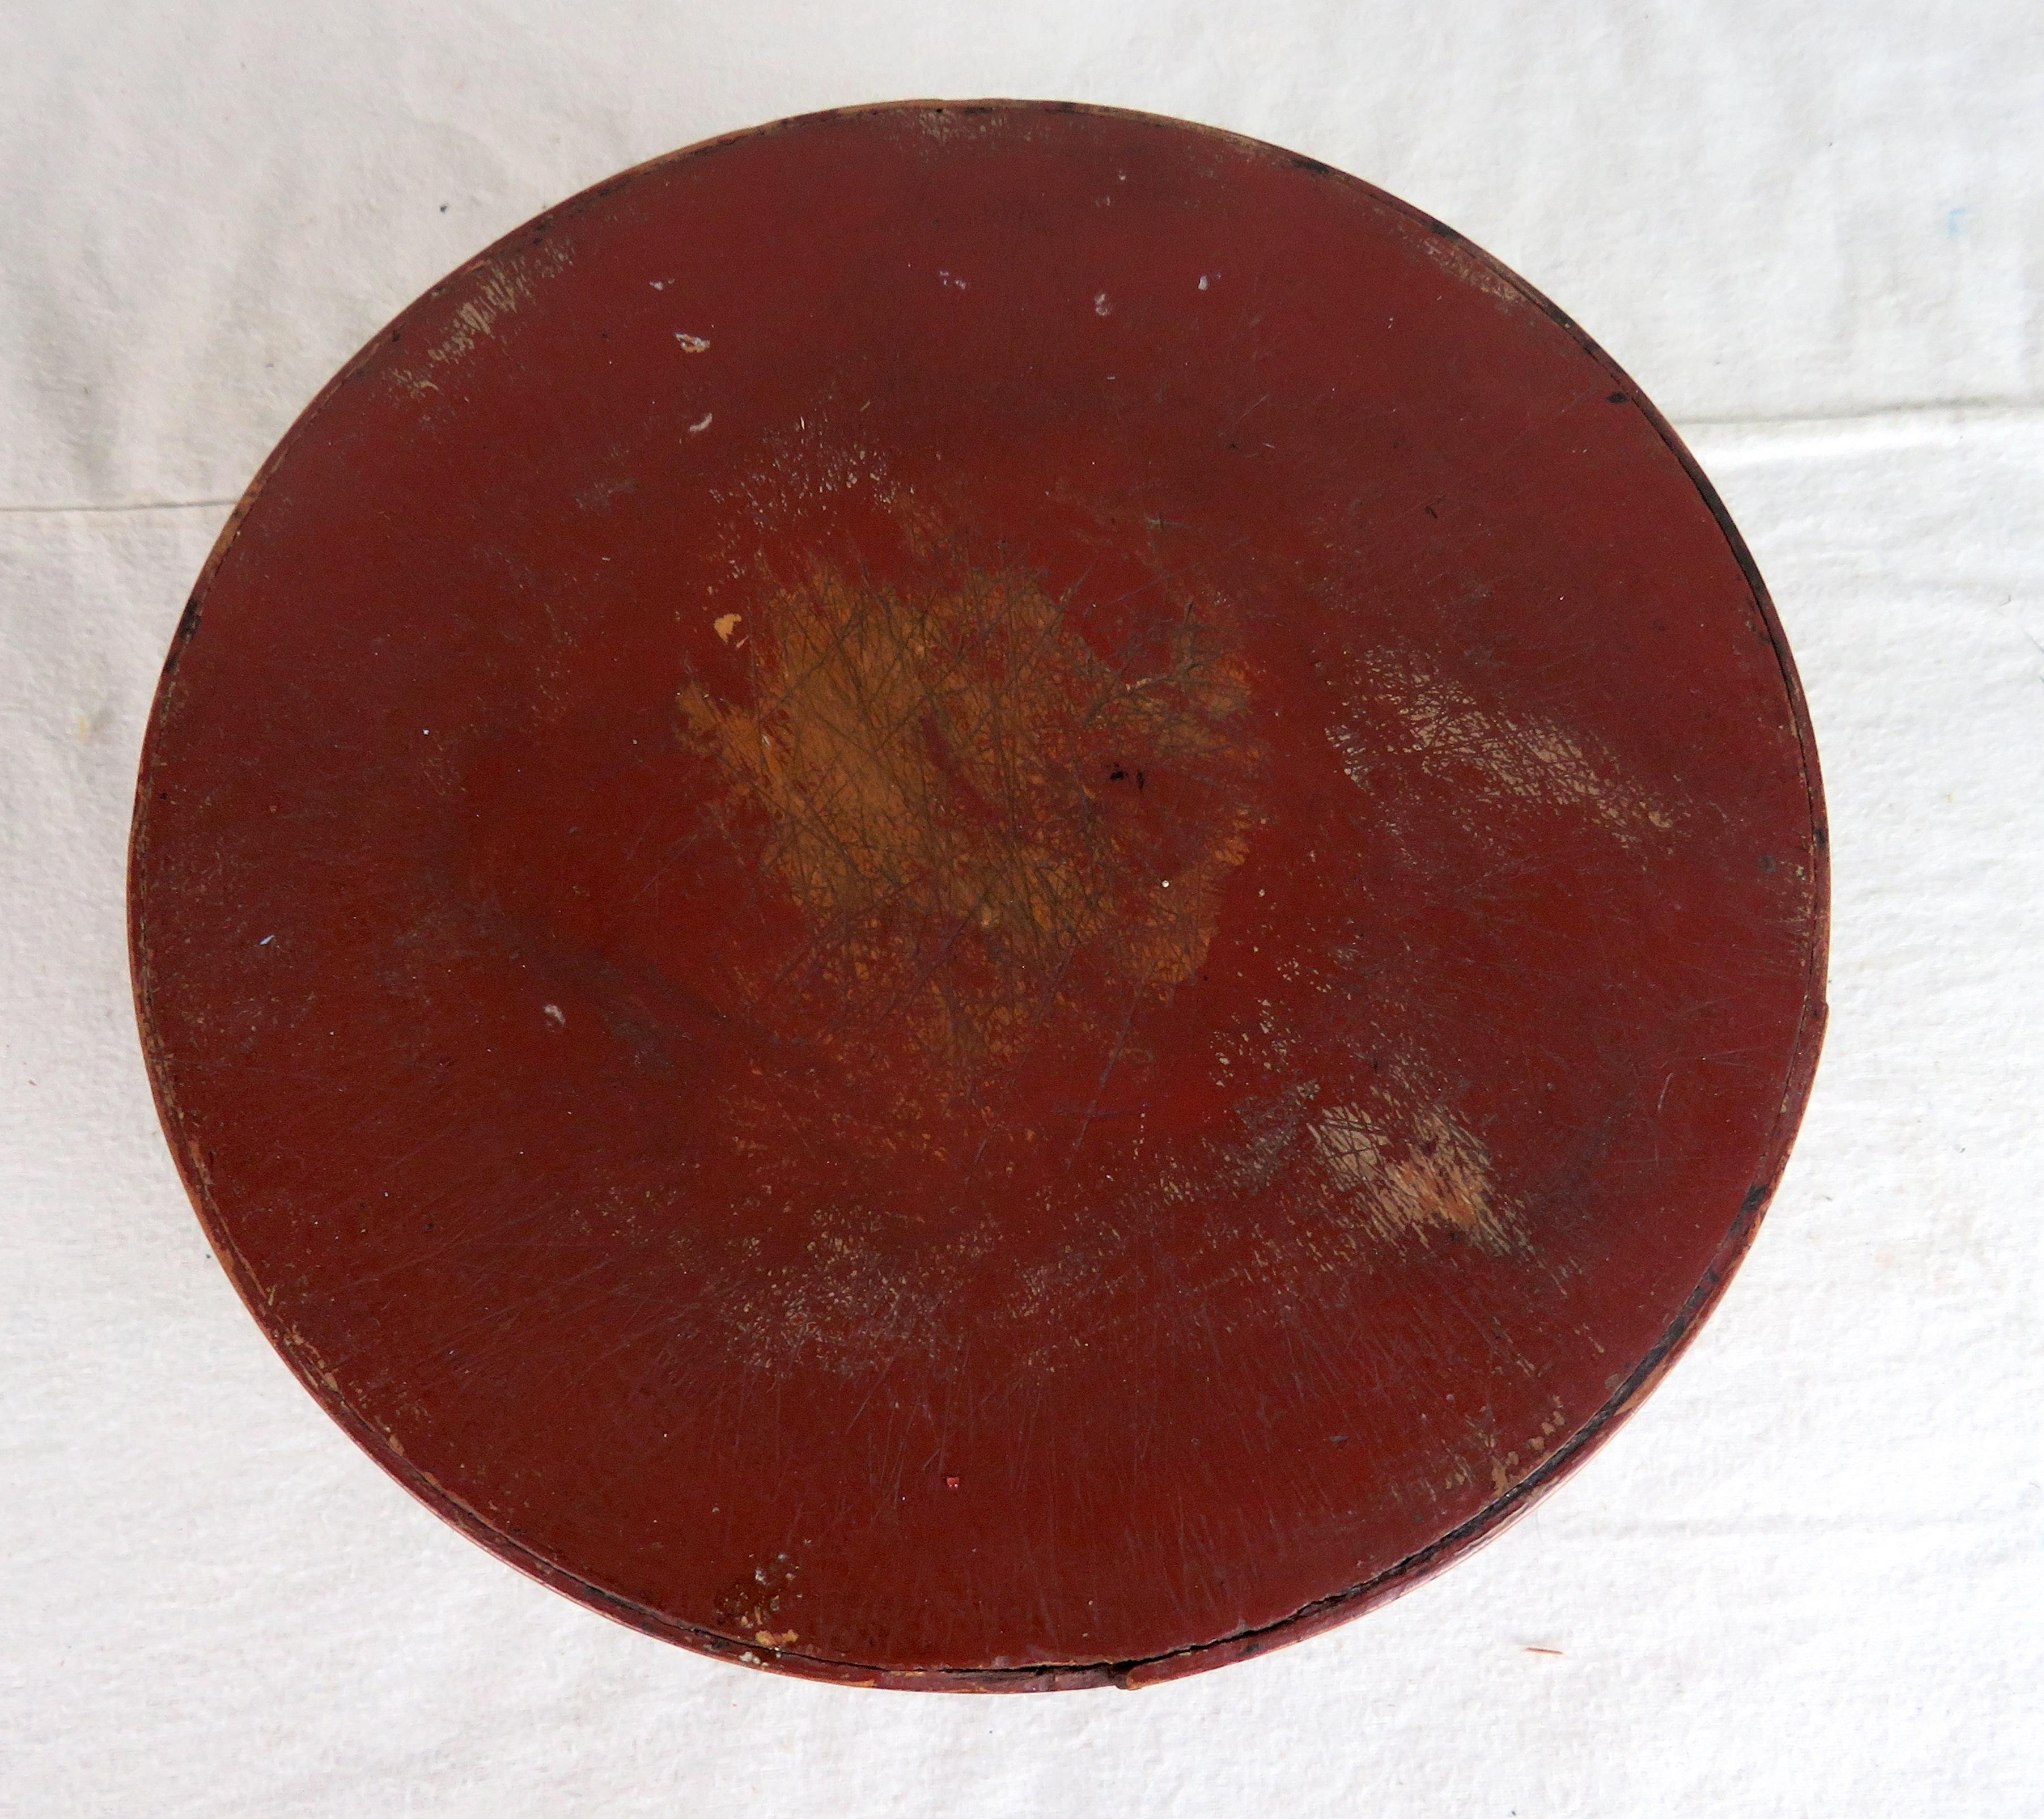 bugholzkiste aus dem 19. Jahrhundert. Runde Form mit roter Farbe.